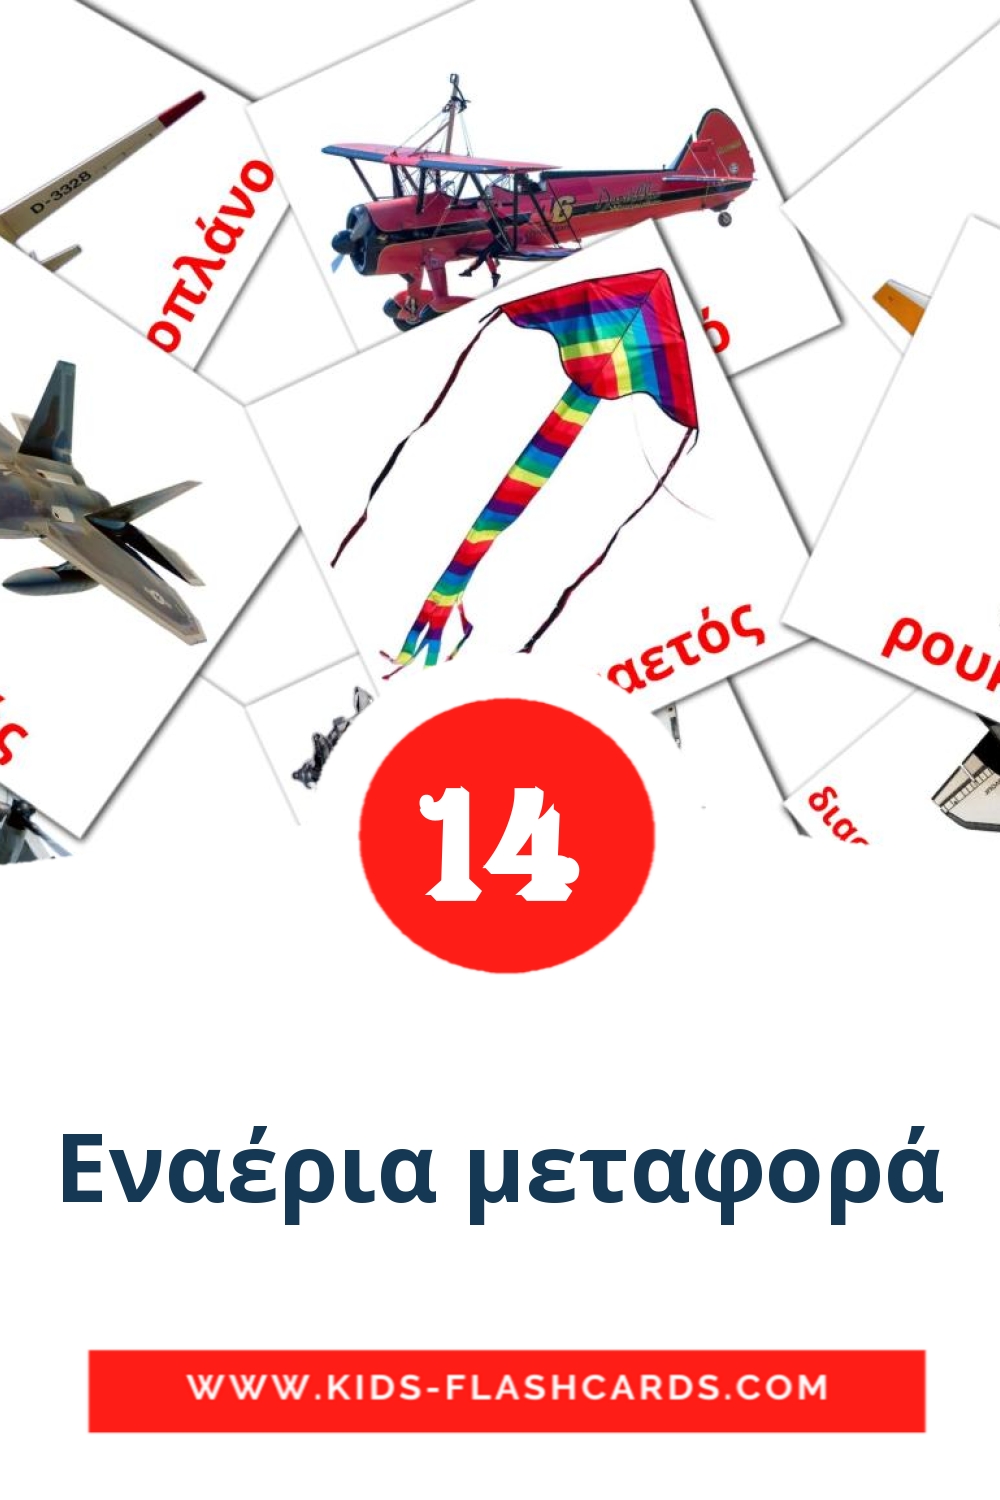 14 Cartões com Imagens de Εναέρια μεταφορά para Jardim de Infância em grego